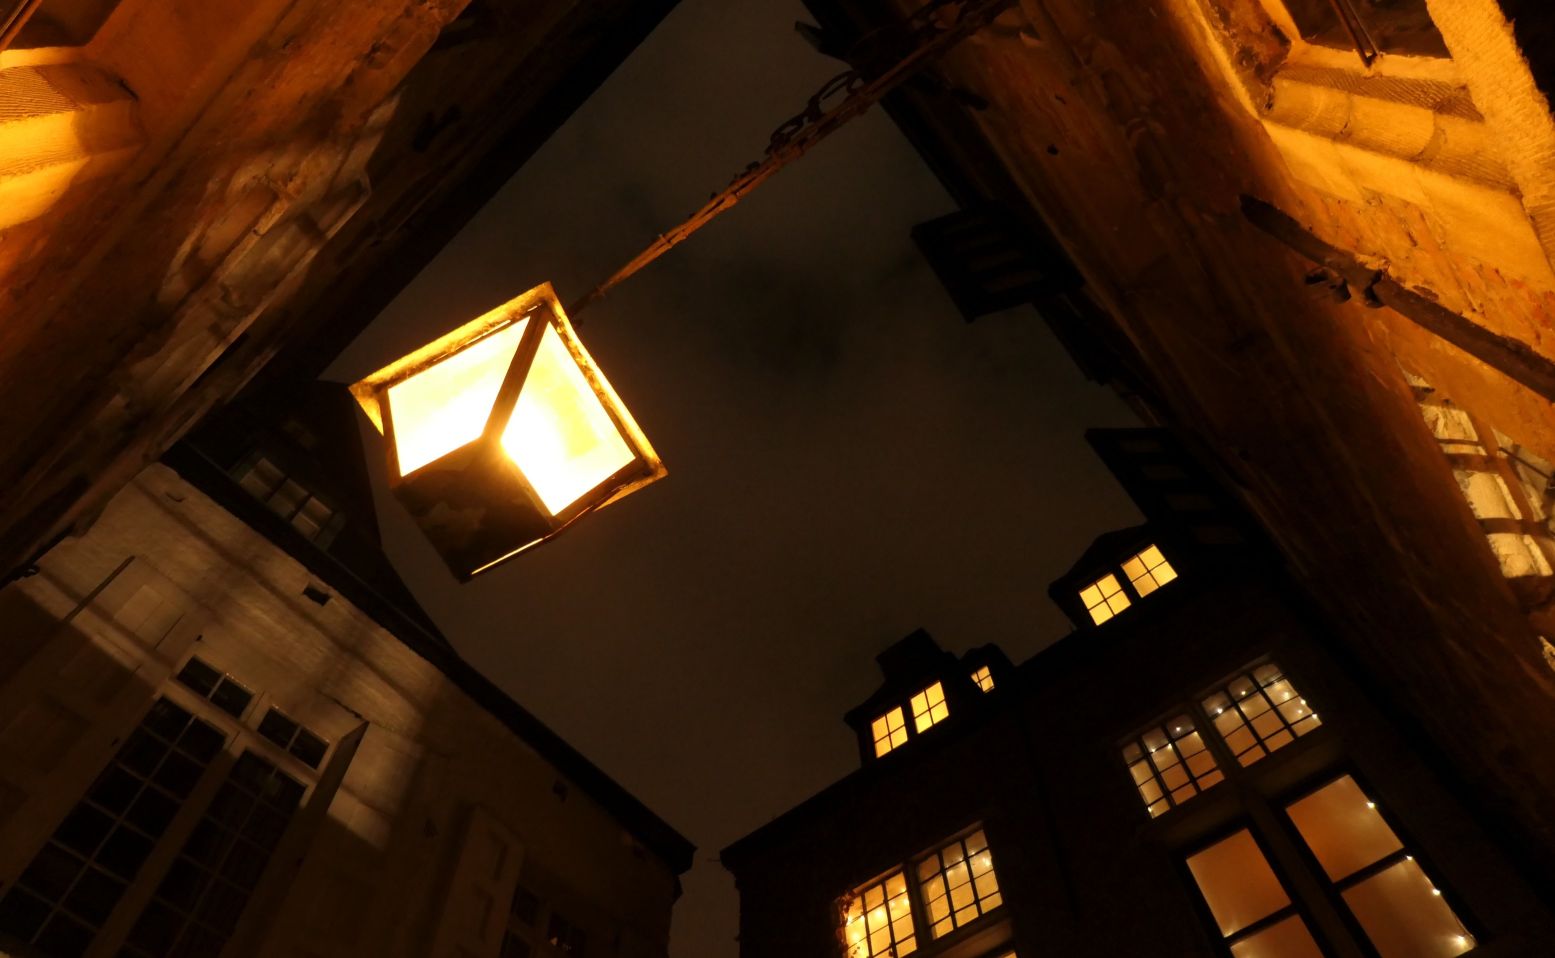 Toen er lantaarntjes in de straten kwamen zagen mensen plotseling Lange Wapper in de schaduwen. Foto: Antwerpse Spookwandeling © Stefan Livens